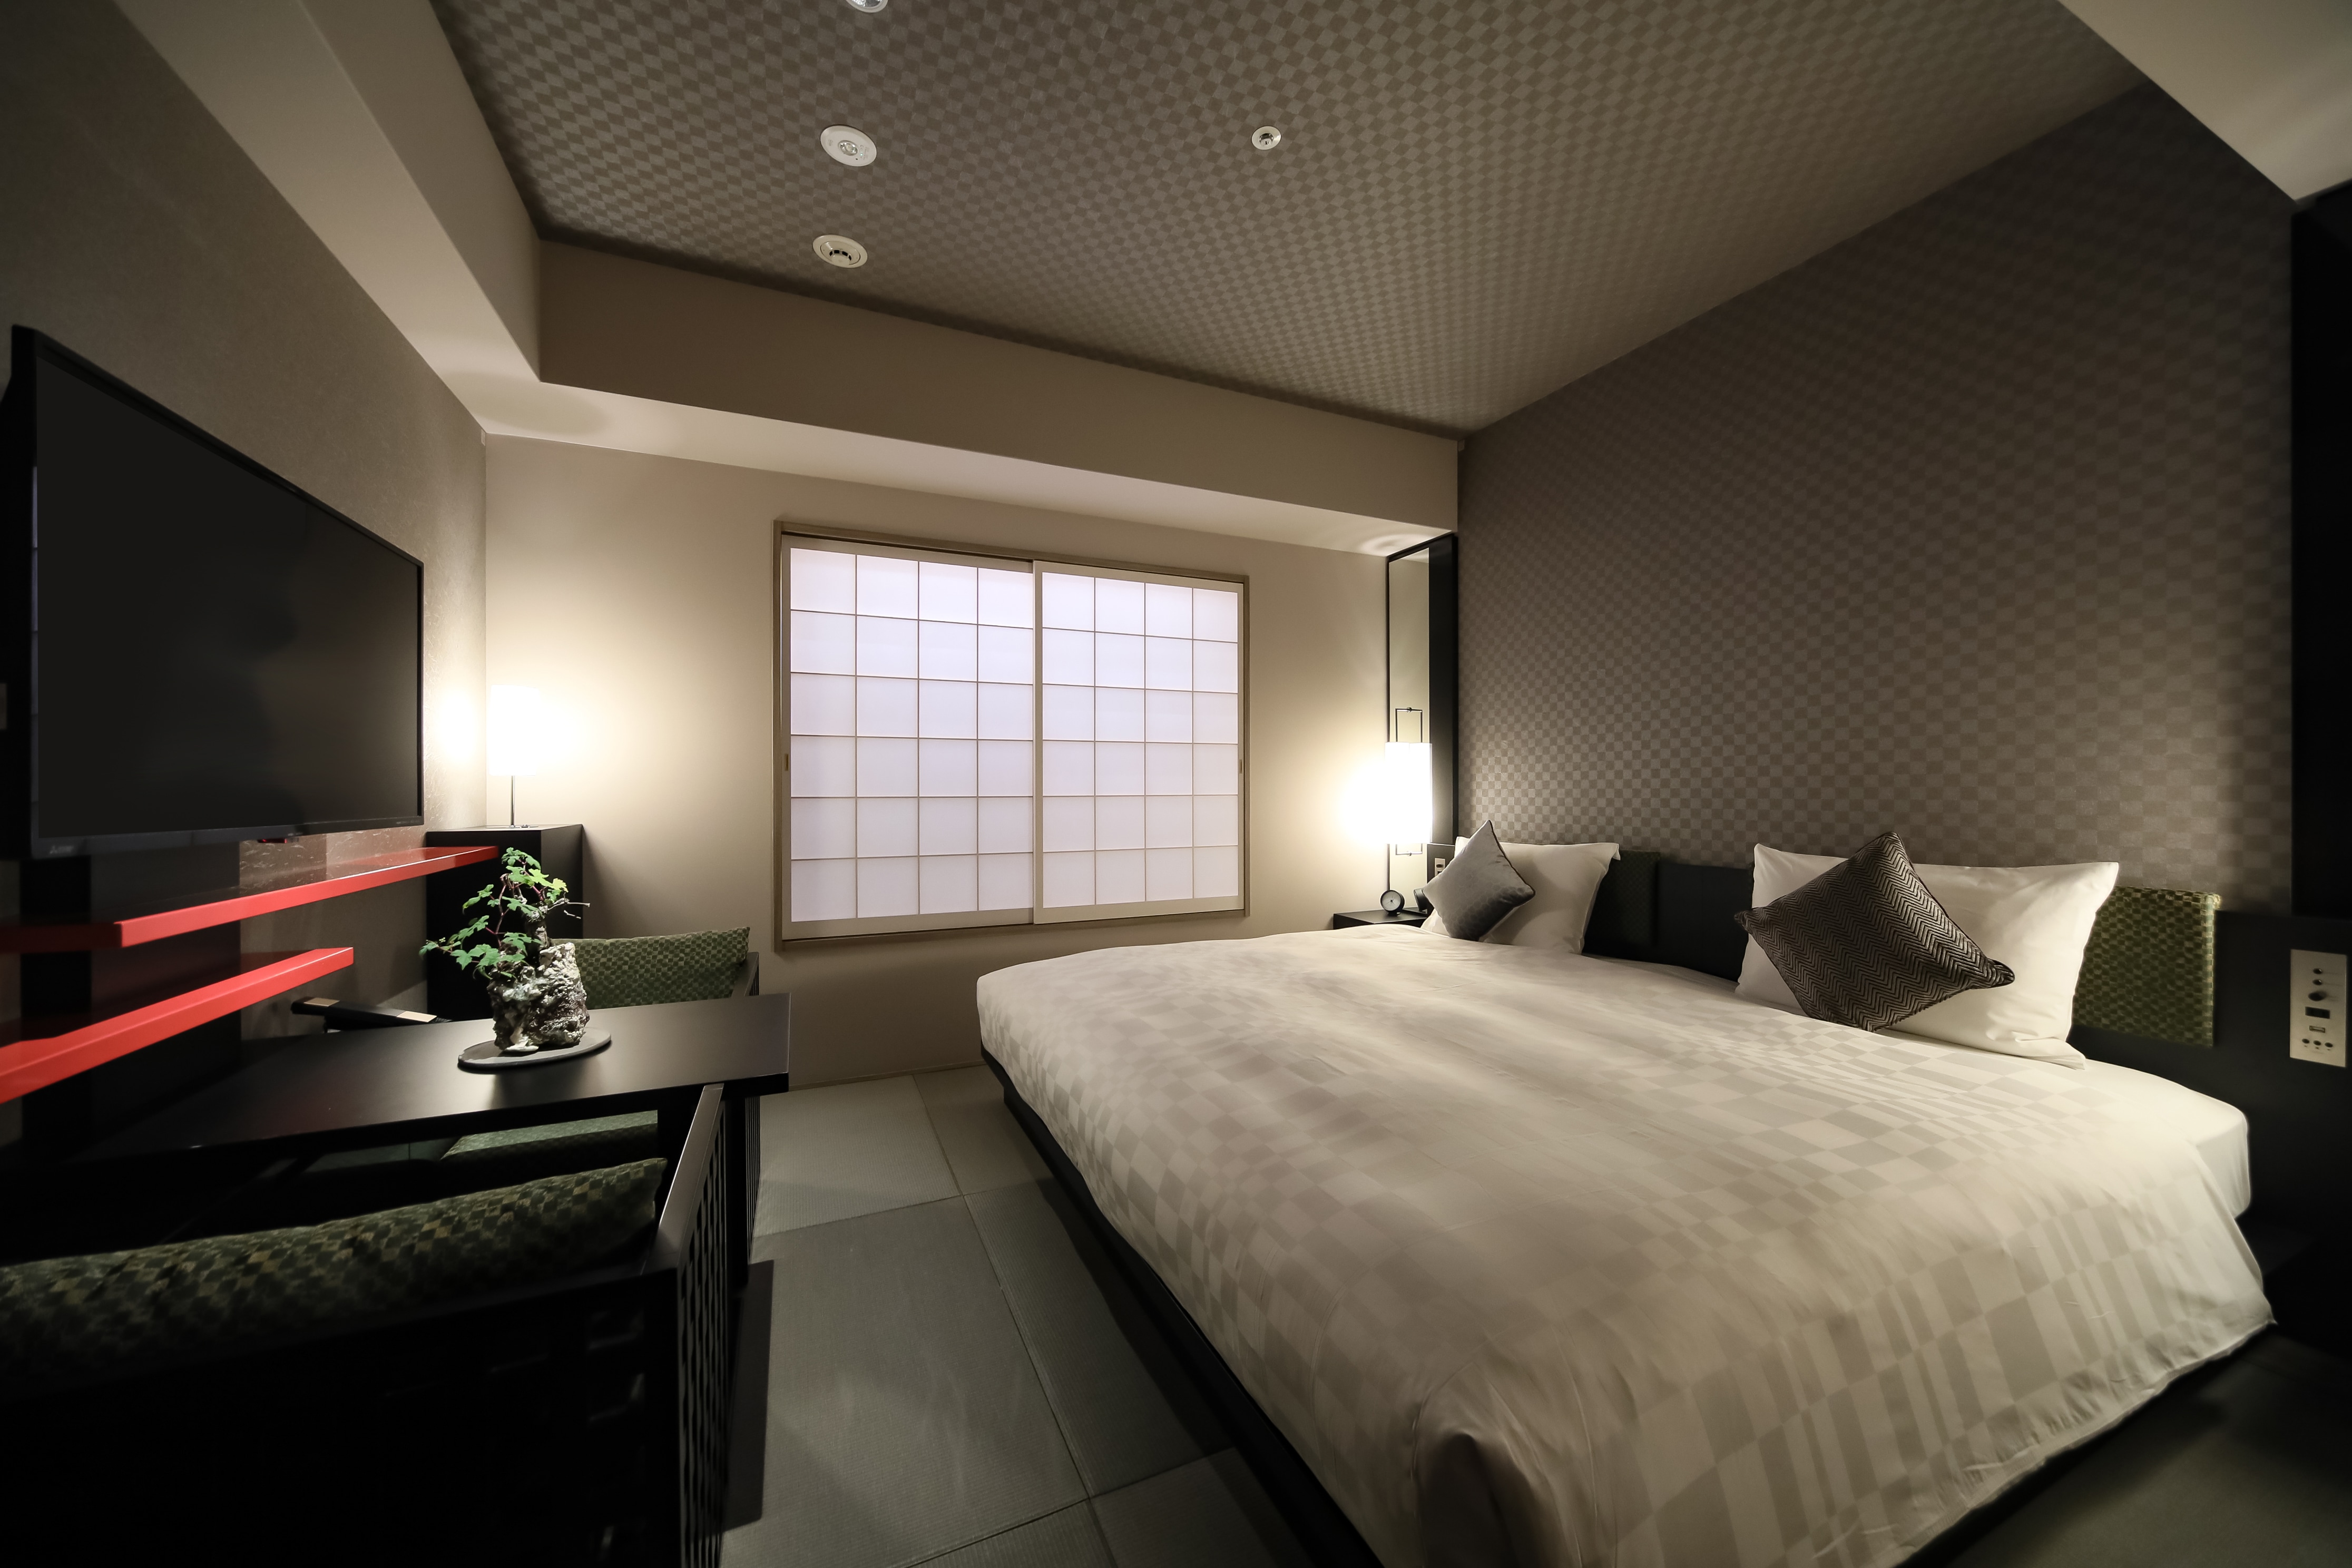 Kamar double yang lebar dengan lebar tempat tidur 210 cm